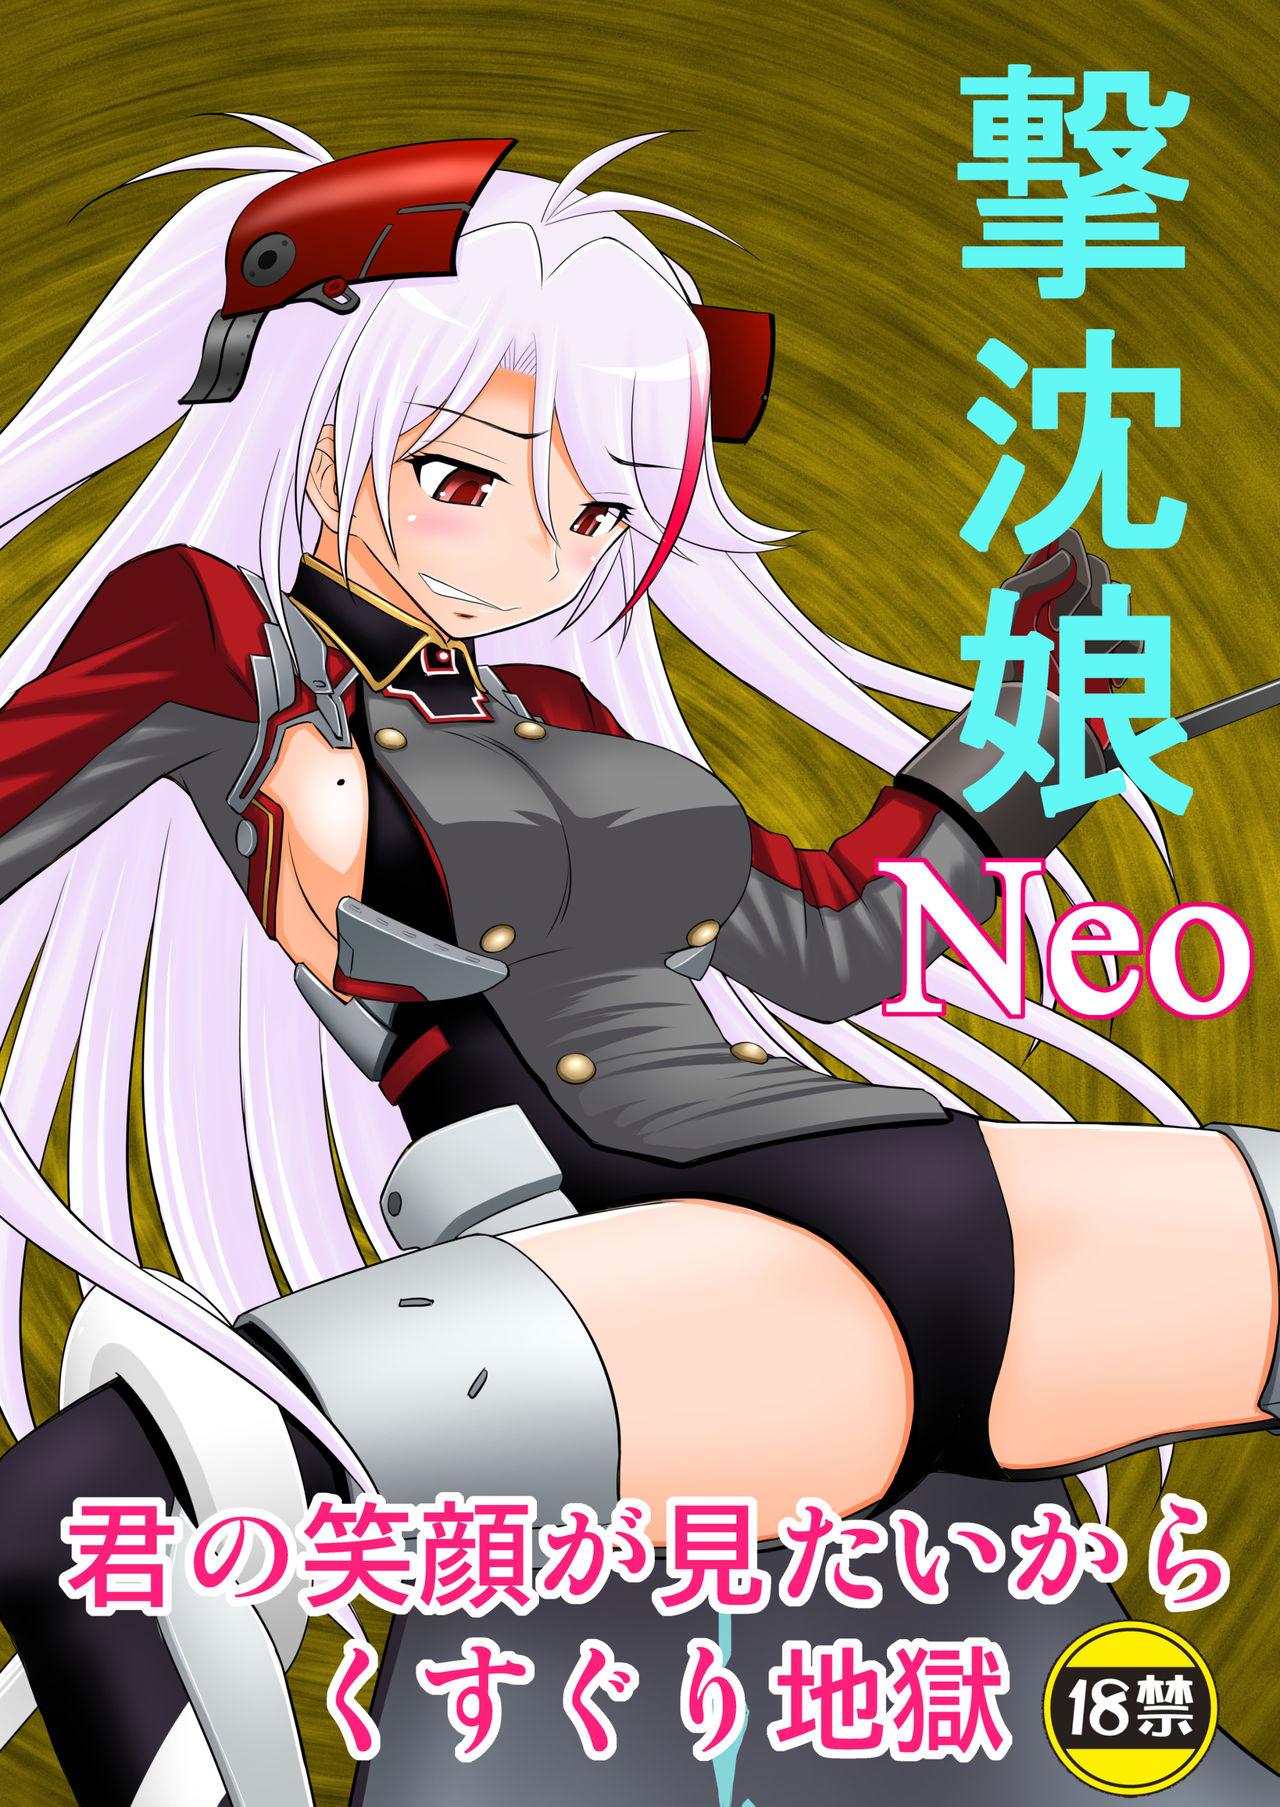 SHIZUMUSU Neo 0